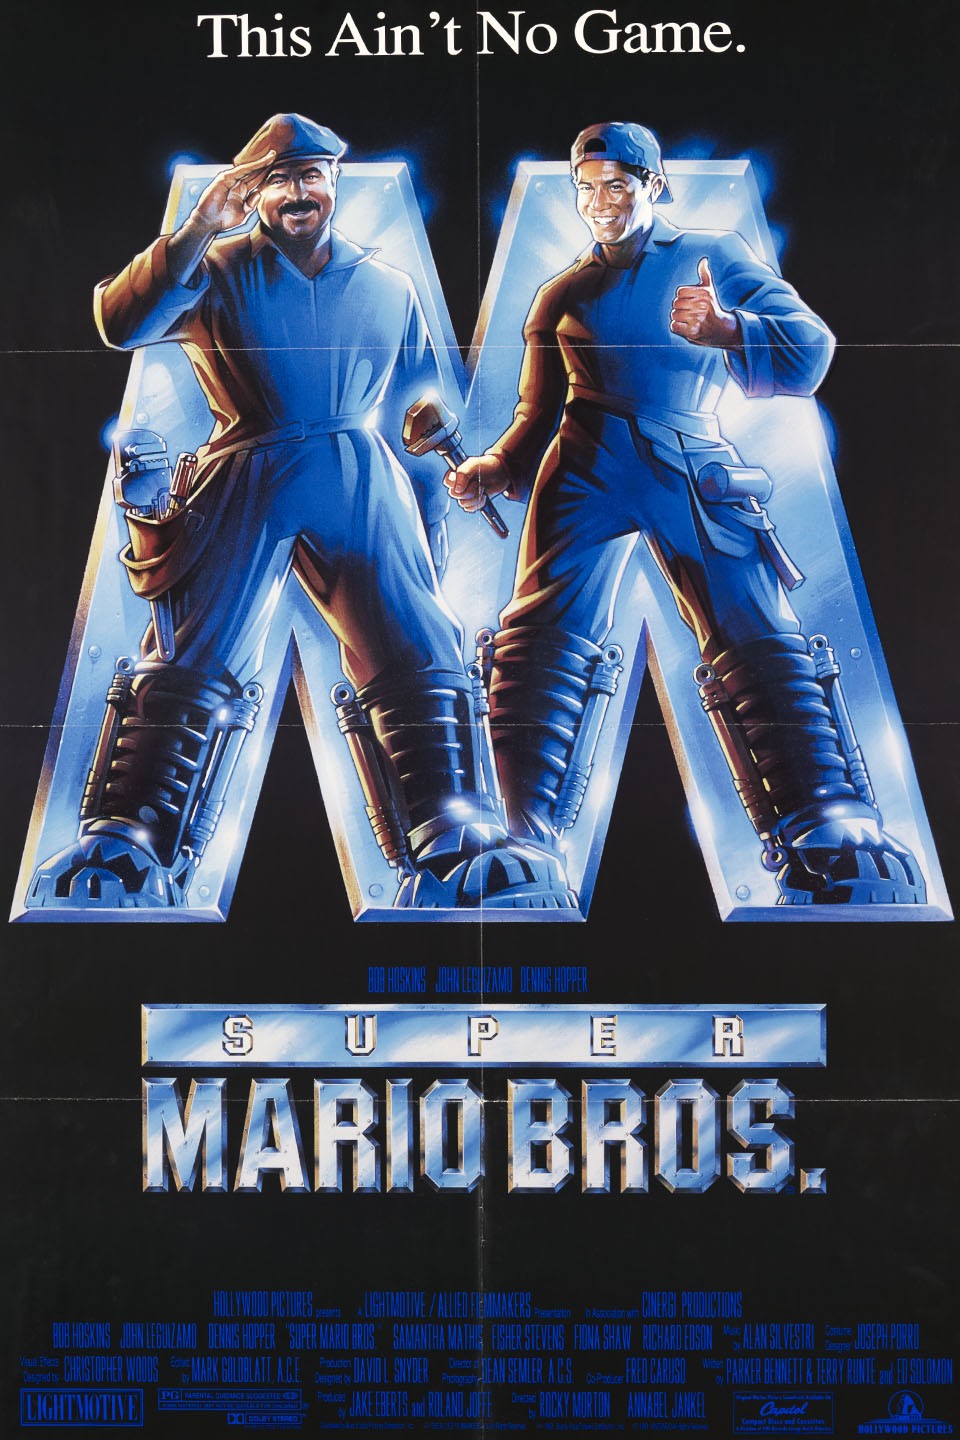 Super Mario Bros.' chega ao streaming; confira as outras estreias